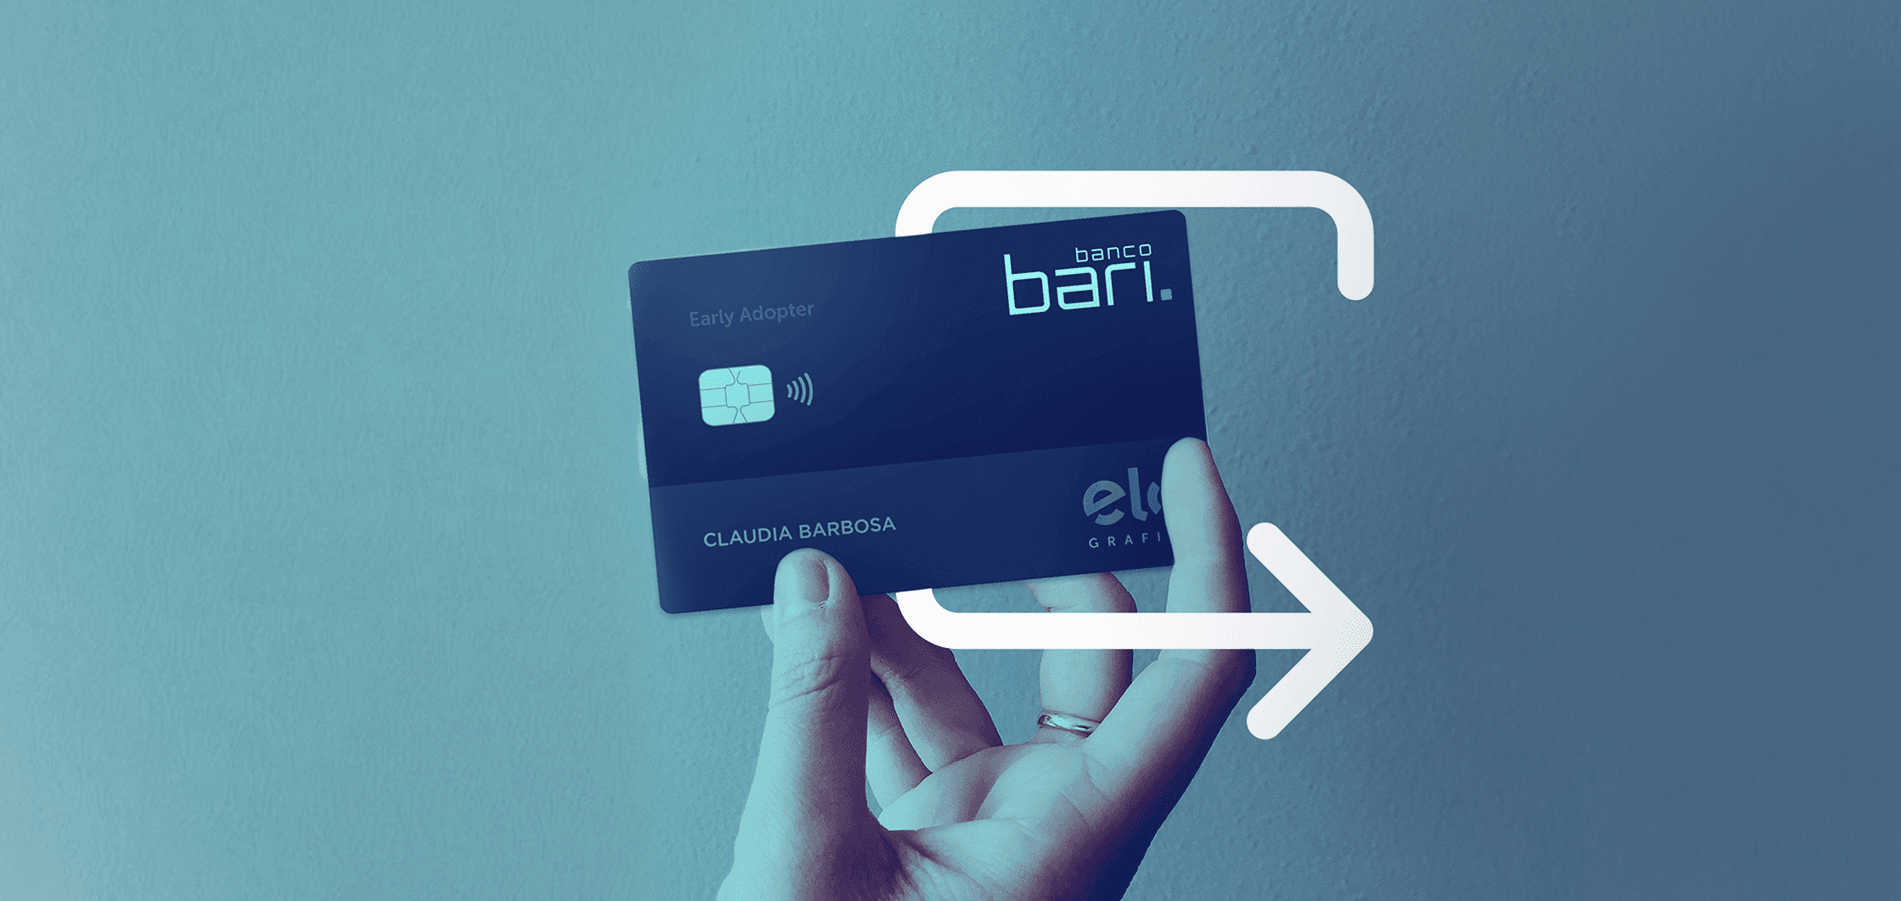 Cartão de crédito sem mistério: benefícios, custos e dicas para usar do jeito certo.